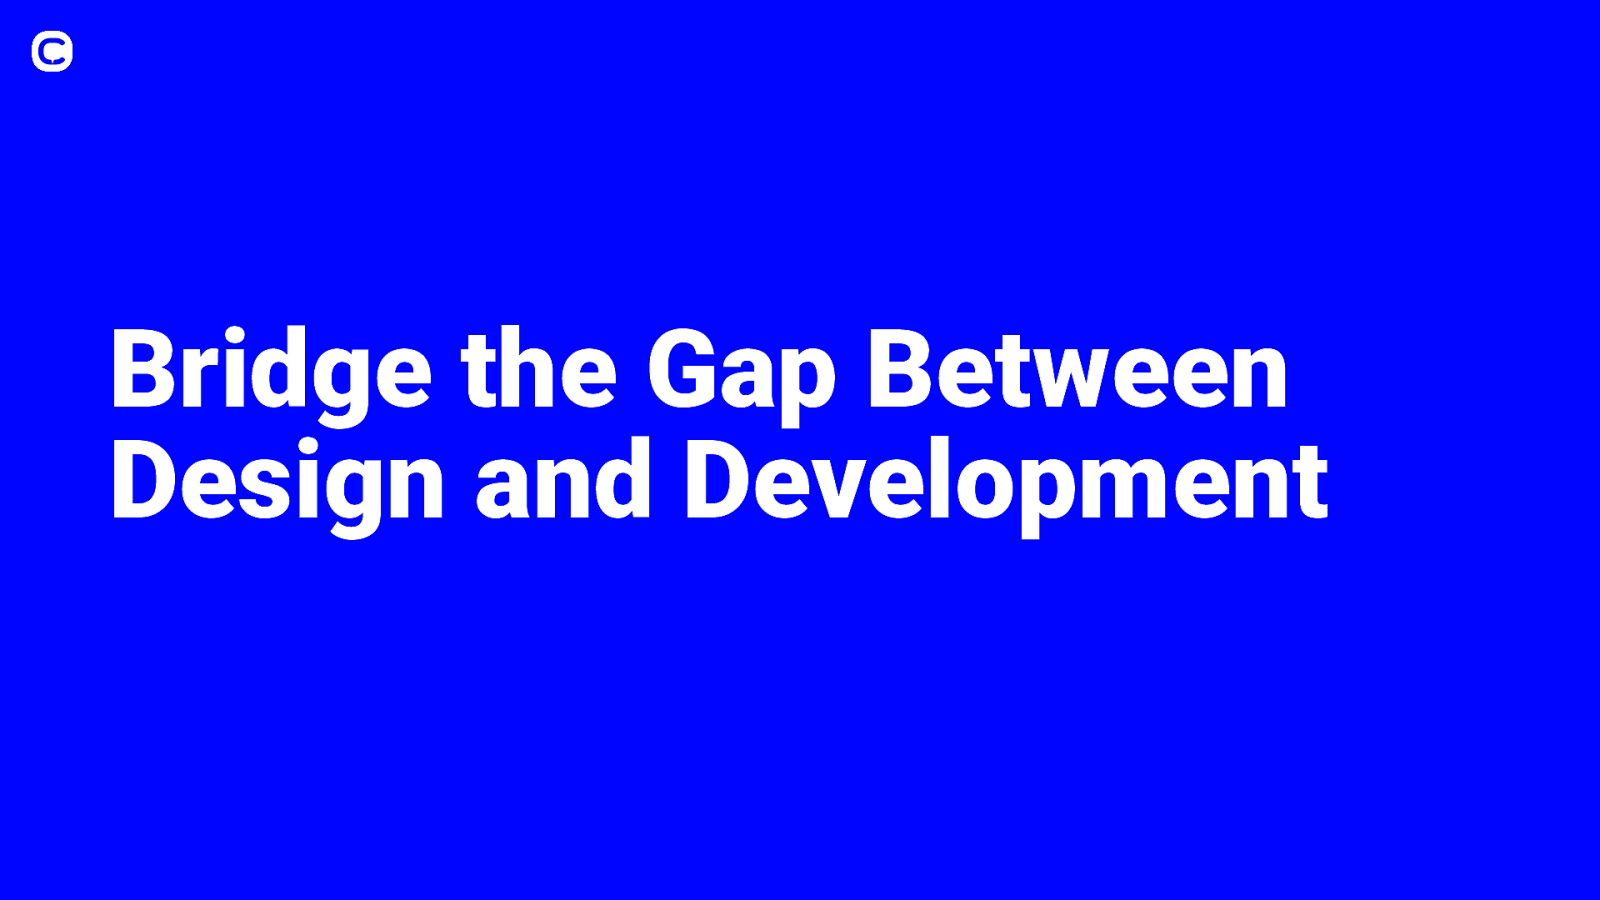 Bridge the Gap Between Design and Development